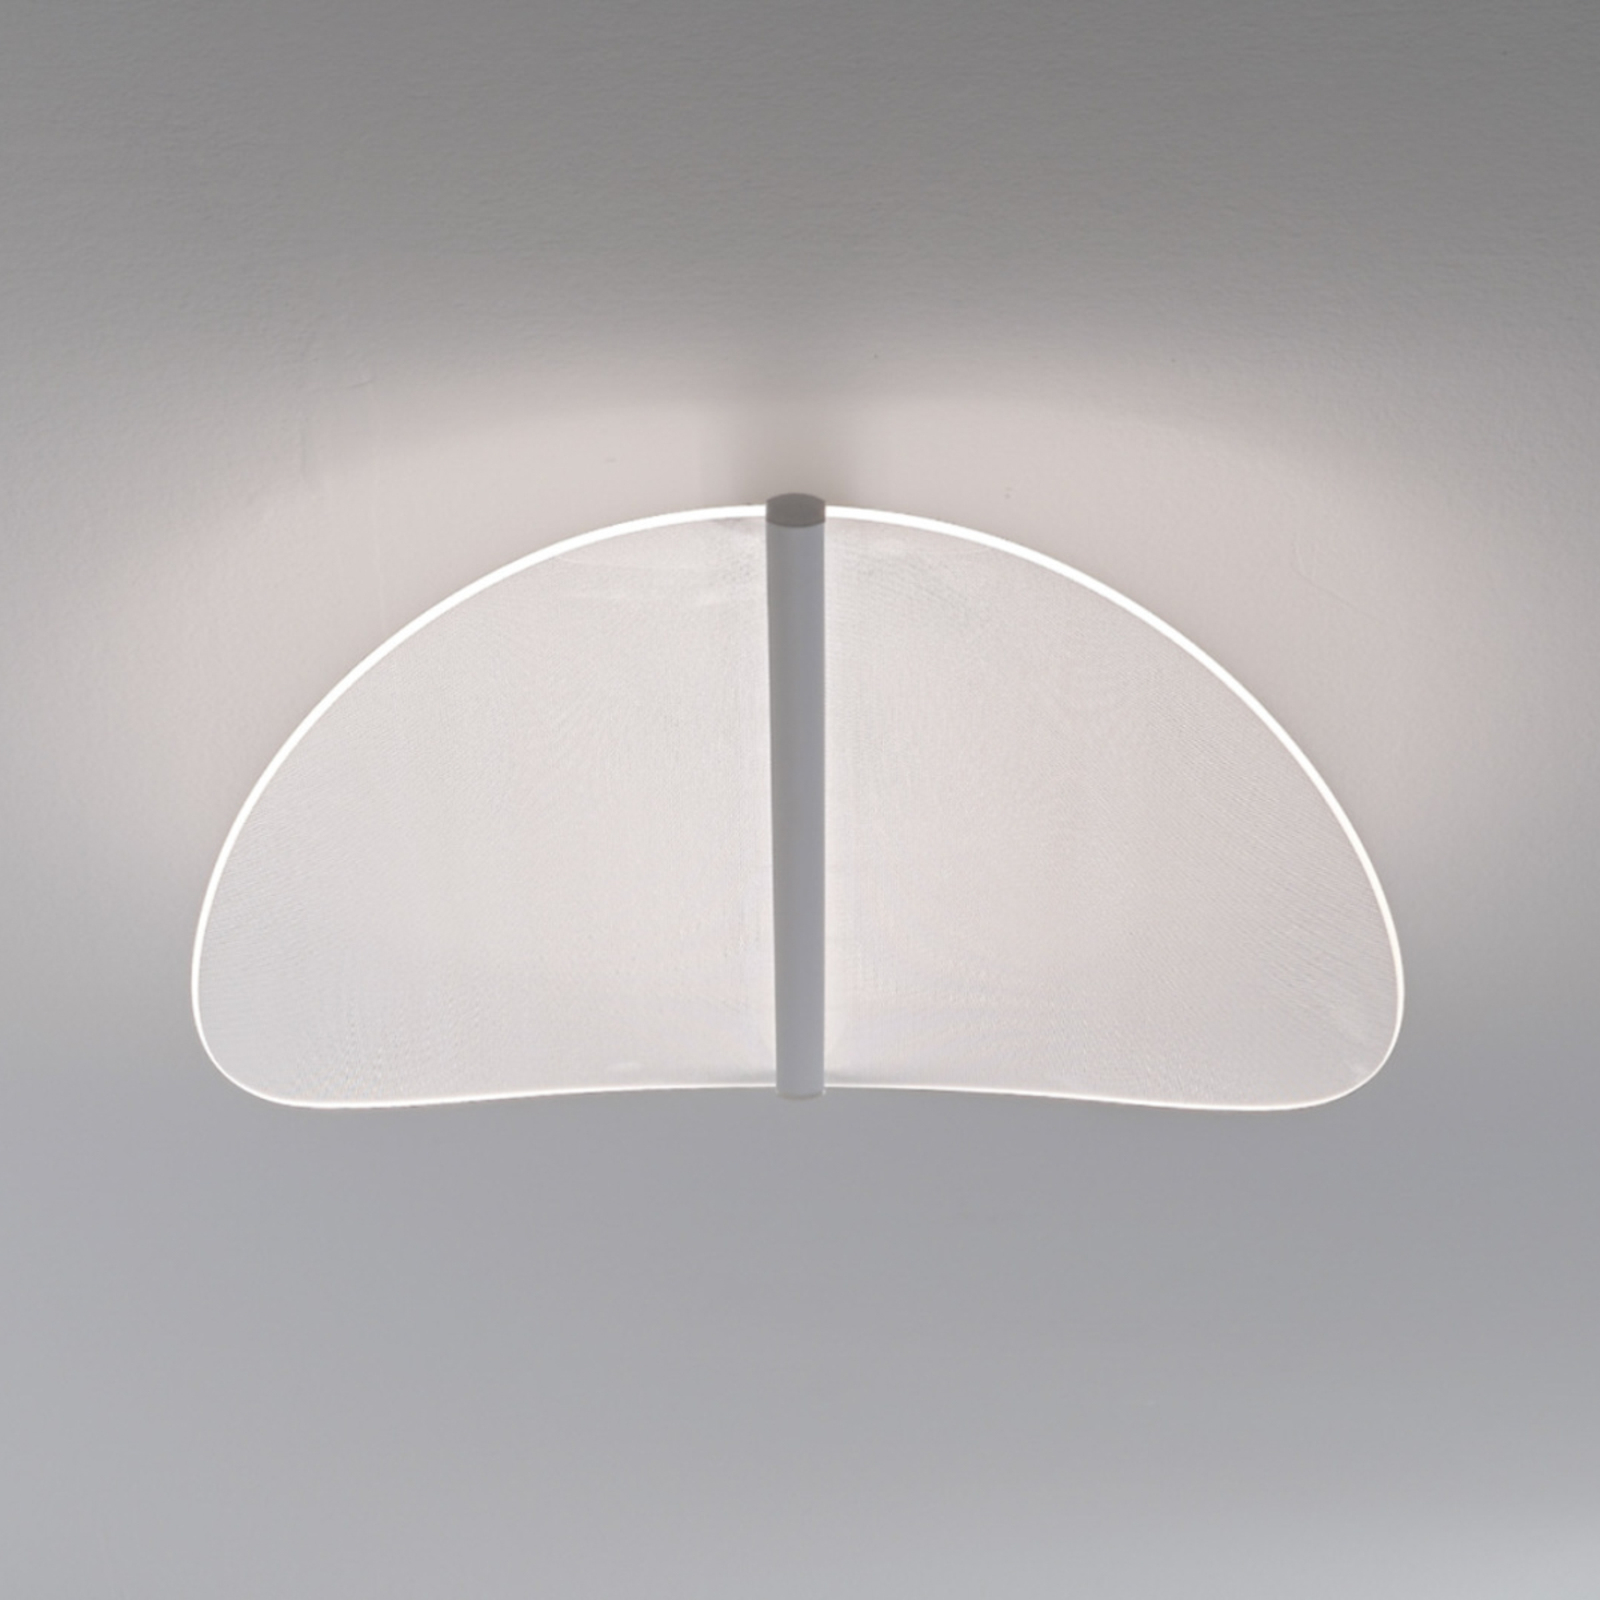 Stilnovo Diphy lampa sufitowa LED, faza, 76 cm